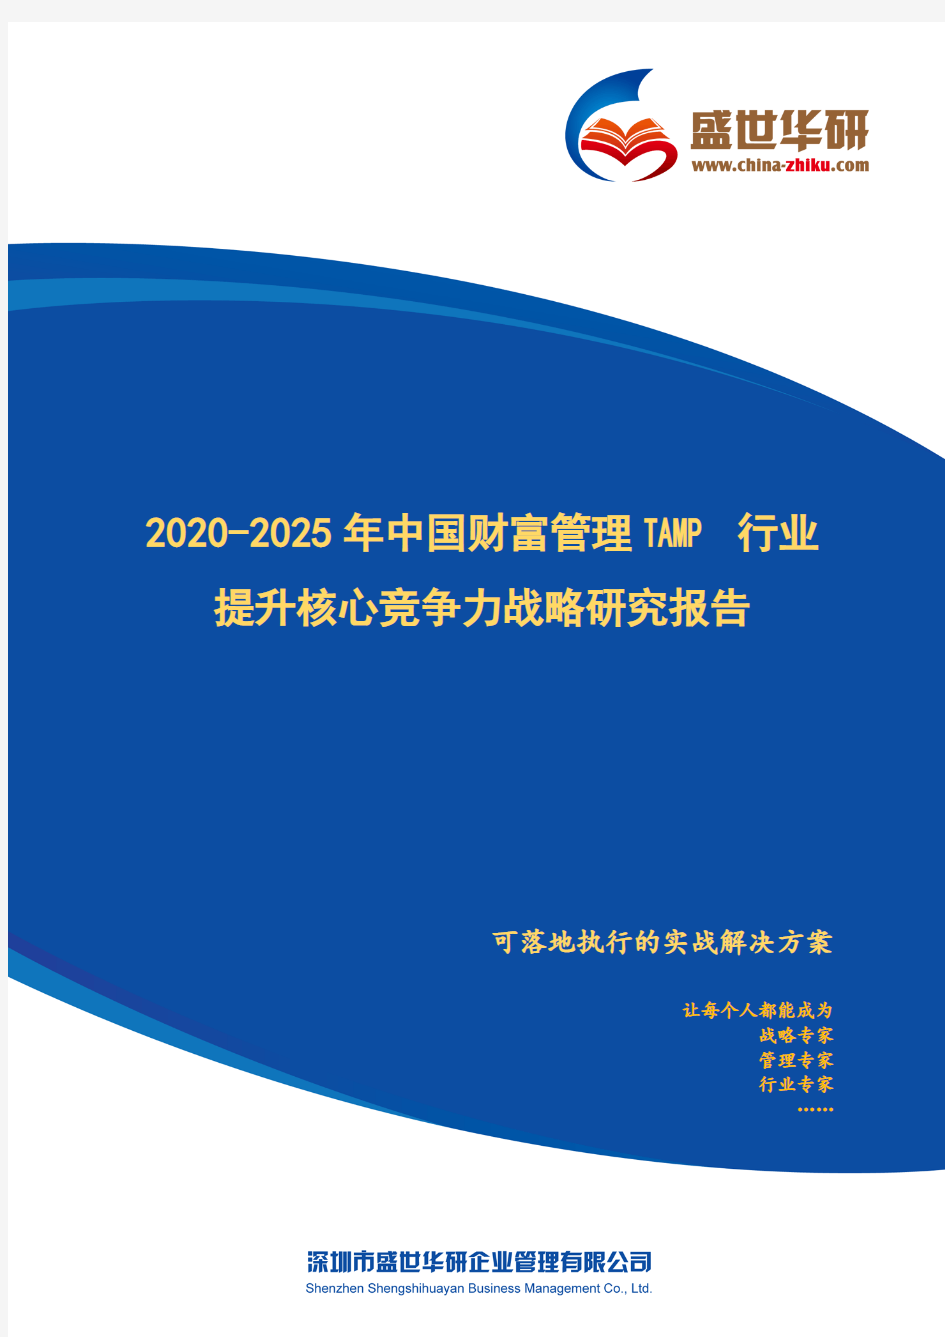 【完整版】2020-2025年中国财富管理TAMP行业提升企业核心竞争力战略研究报告